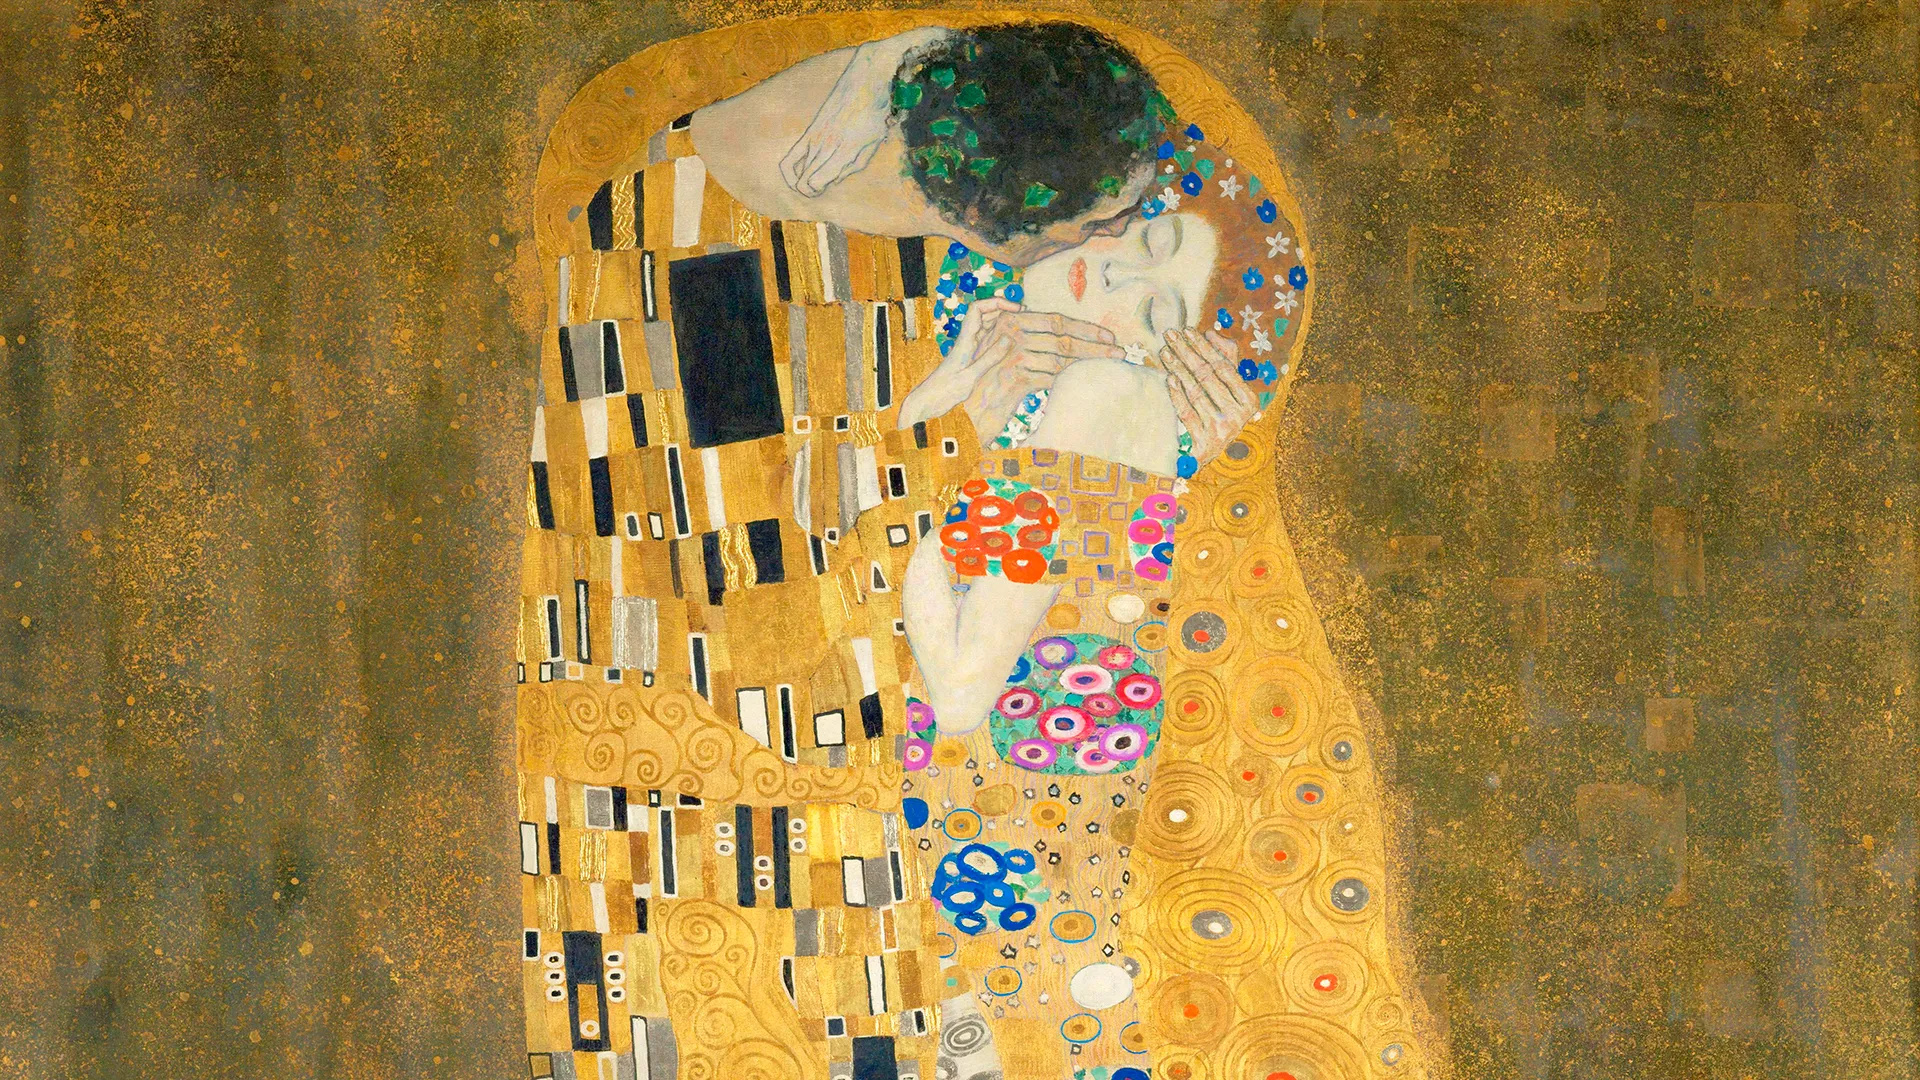 Gustav Klimt, Important facts, The Kiss, British GQ, 1920x1080 Full HD Desktop